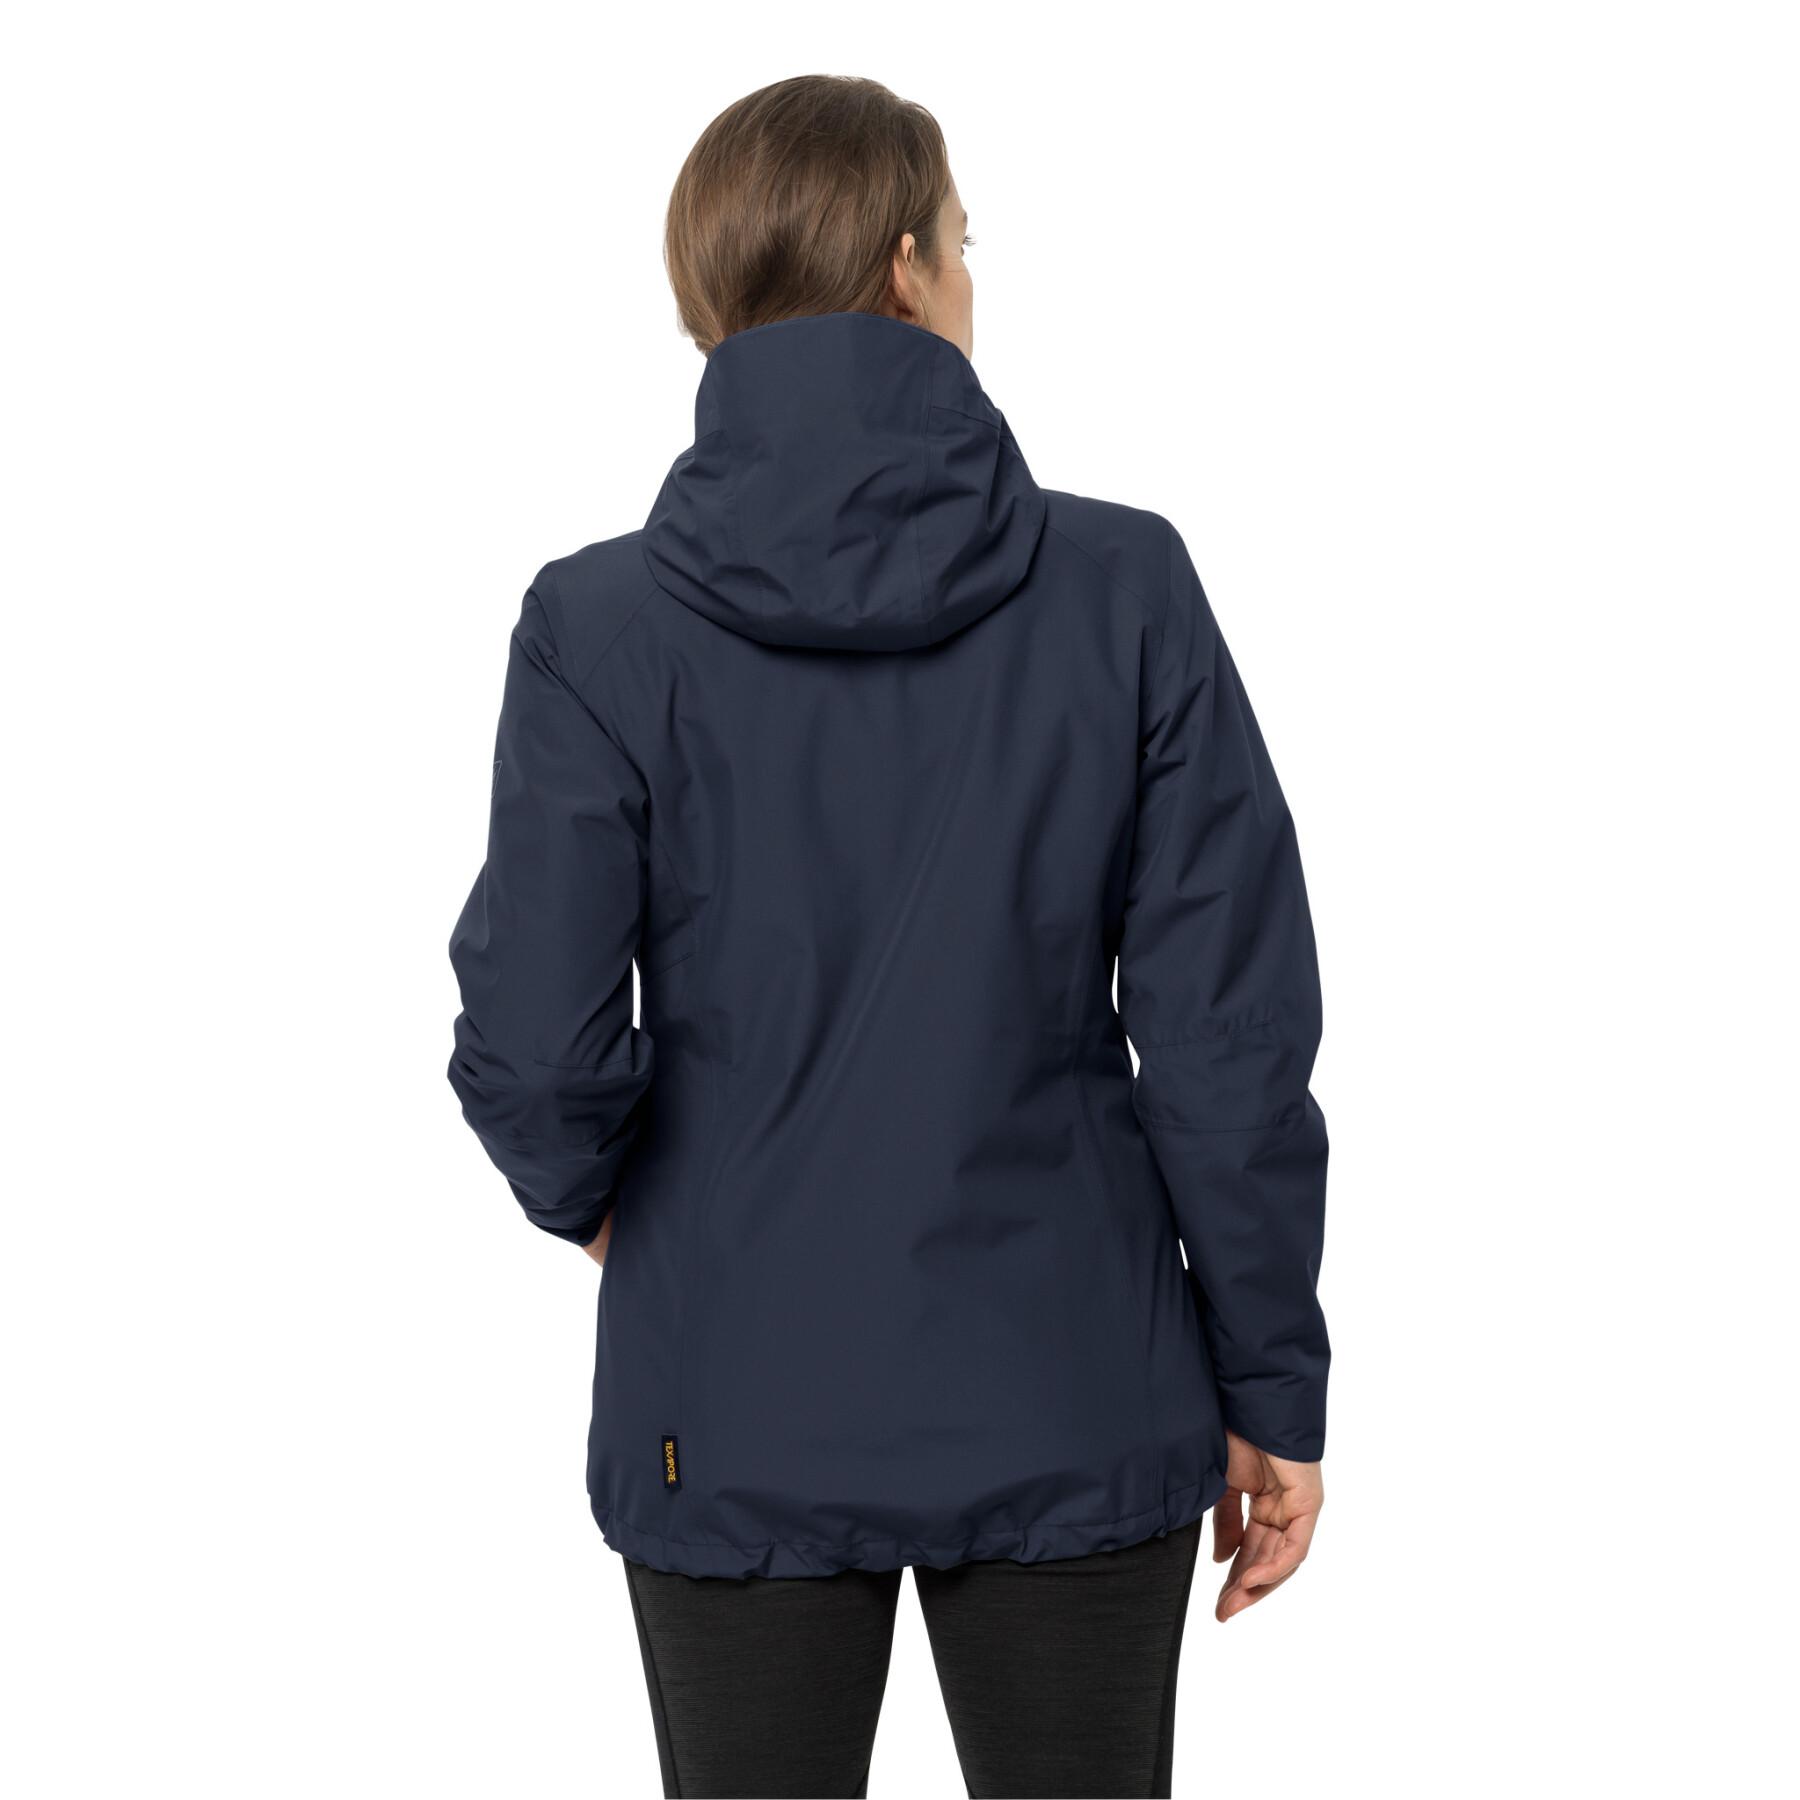 Women's waterproof jacket Jack Wolfskin norrland 3in1